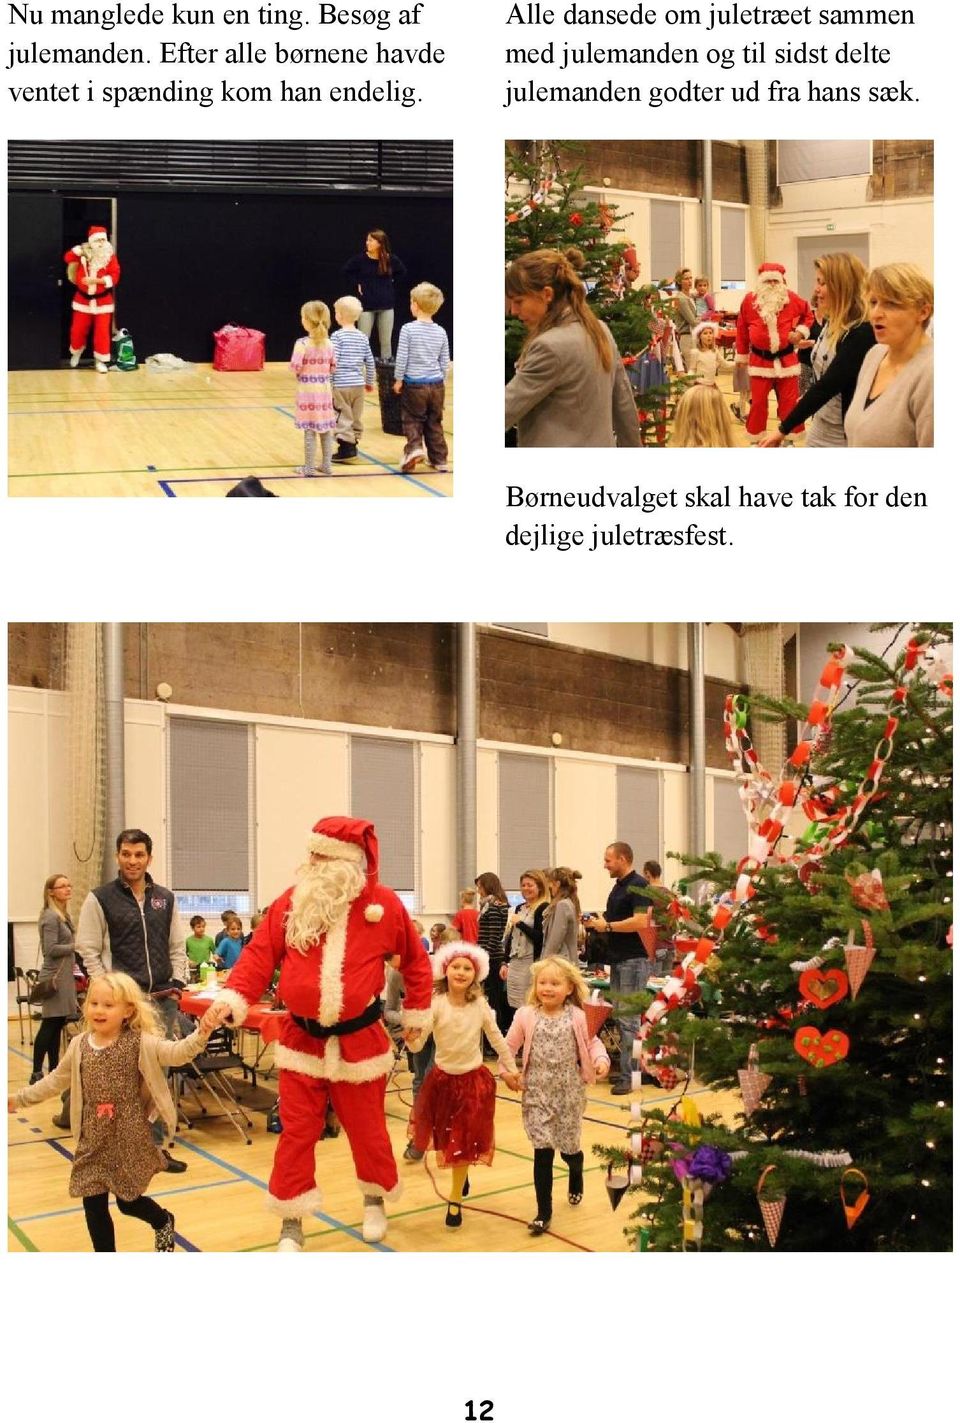 Alle dansede om juletræet sammen med julemanden og til sidst delte